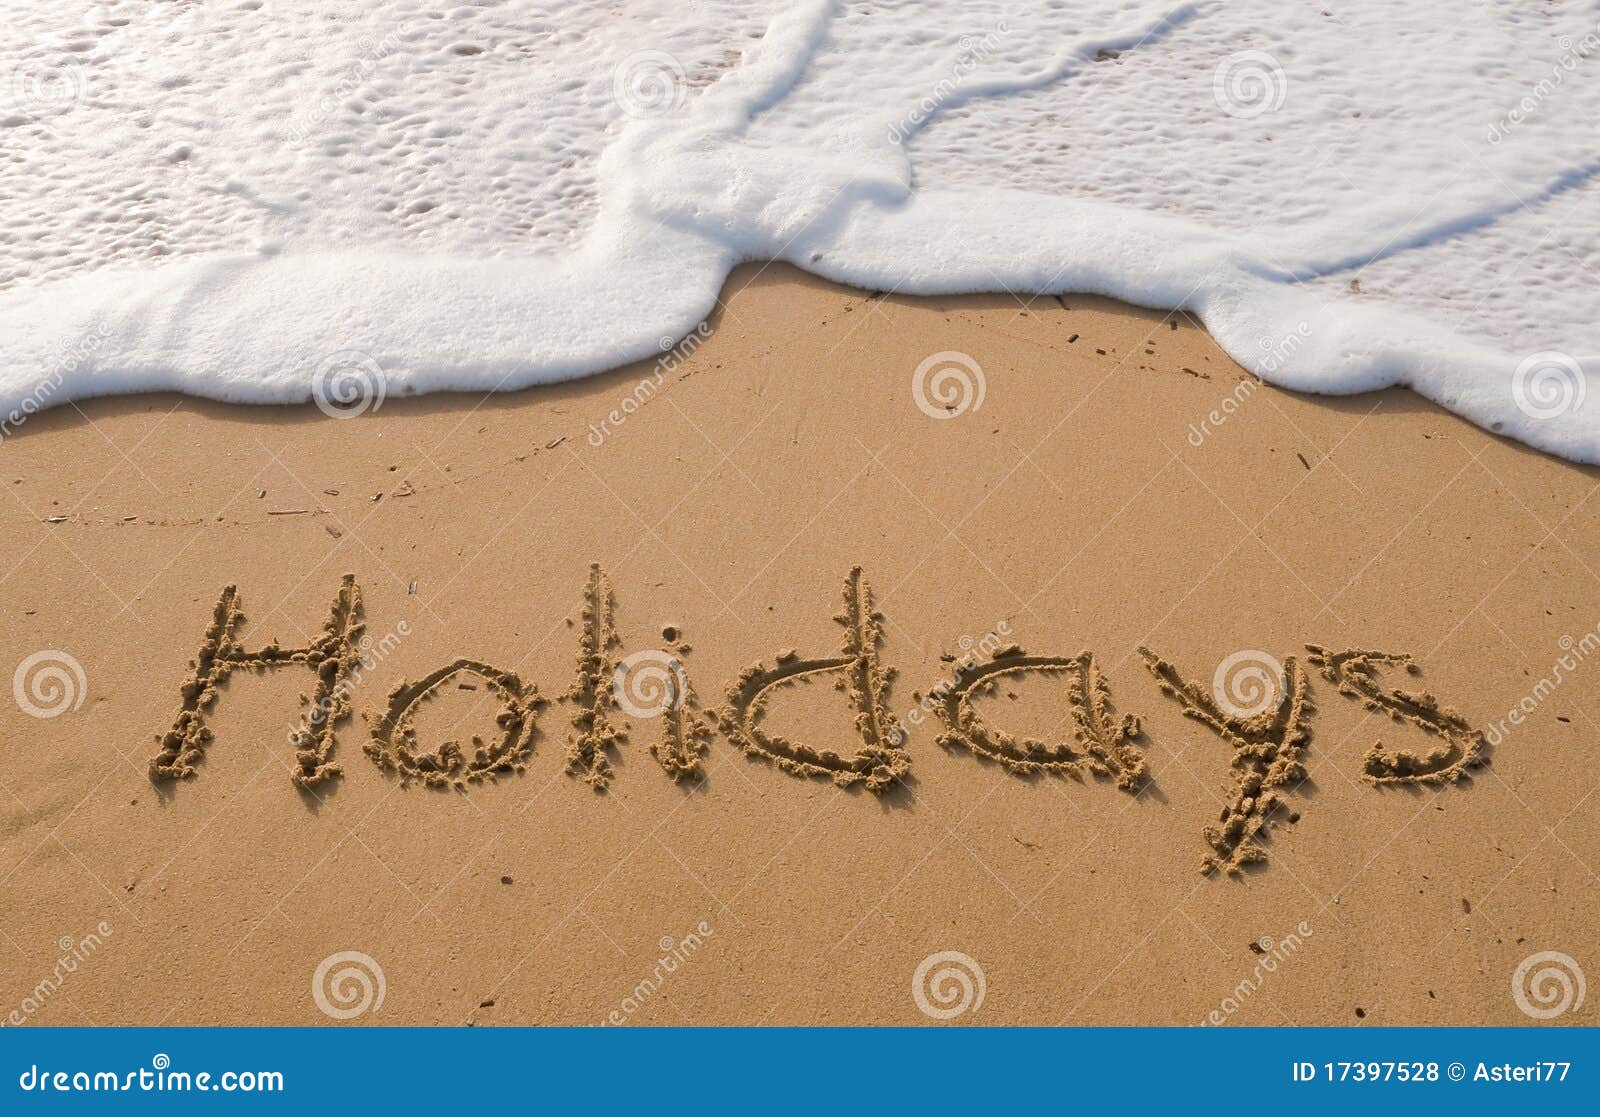 the inscription on the sand - holidays